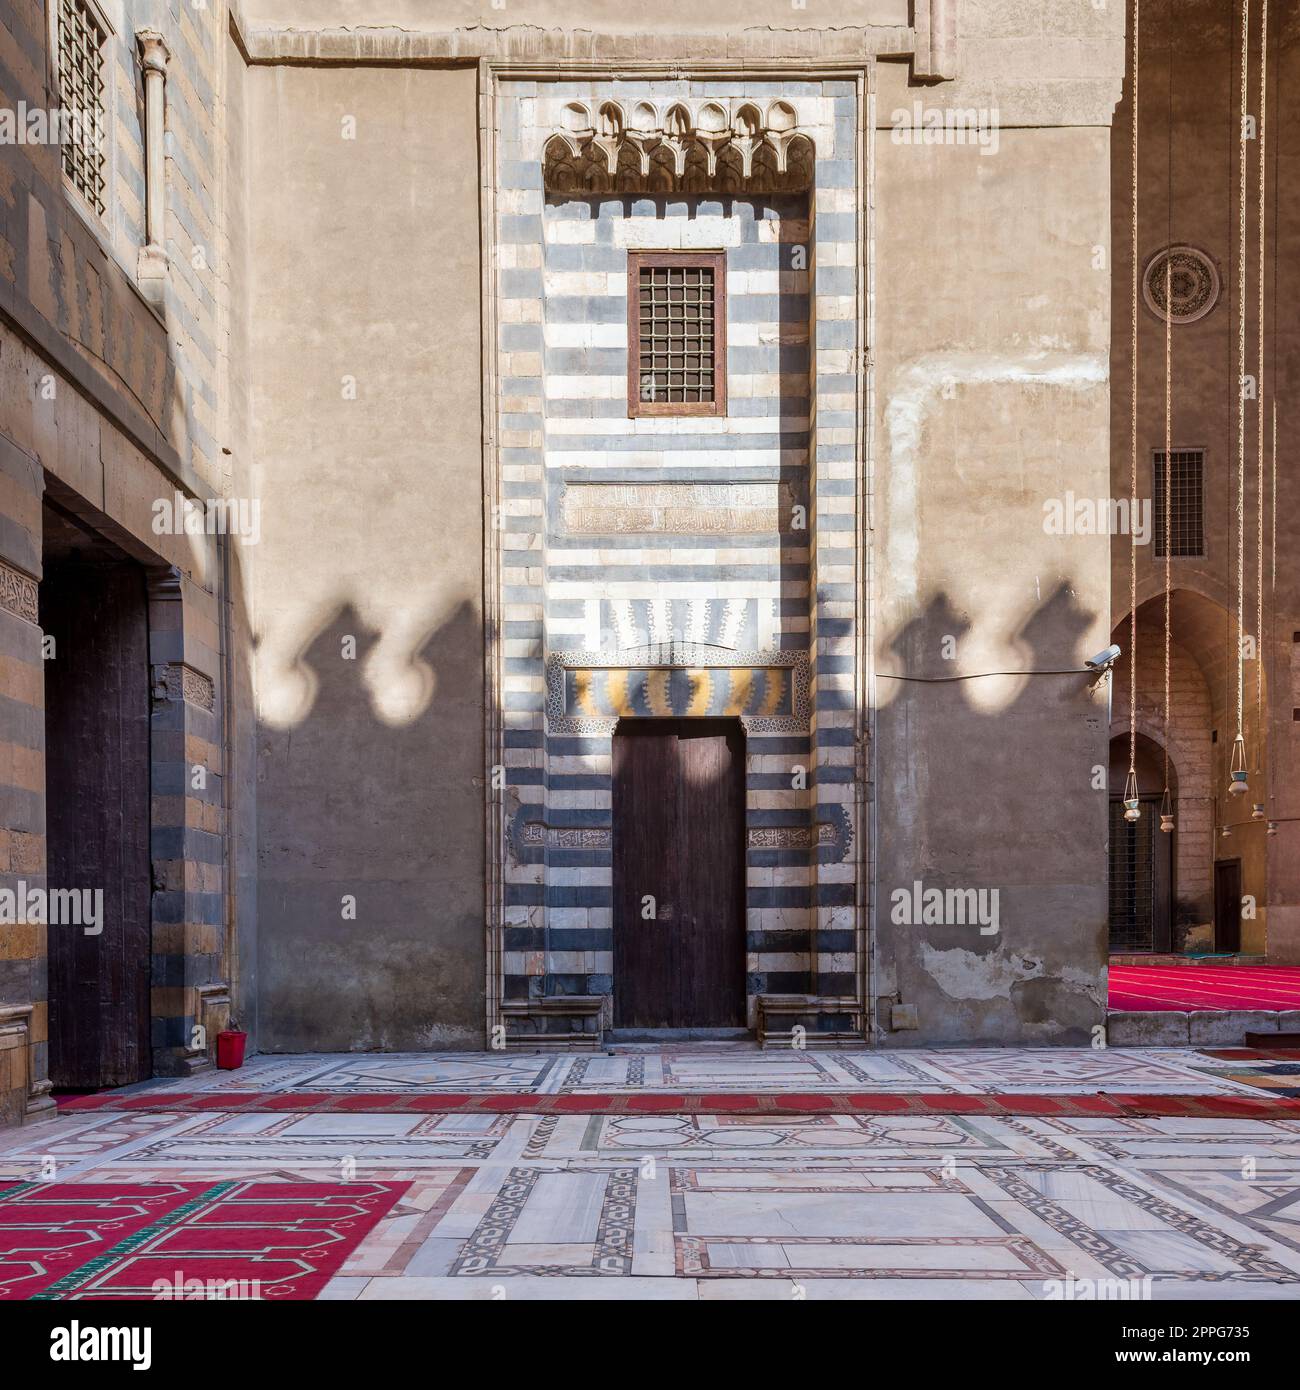 Parete con decorazioni in marmo bianco e nero a righe, porta e finestra grunge in legno, moschea Sultan Hassan, Cairo, Egitto Foto Stock